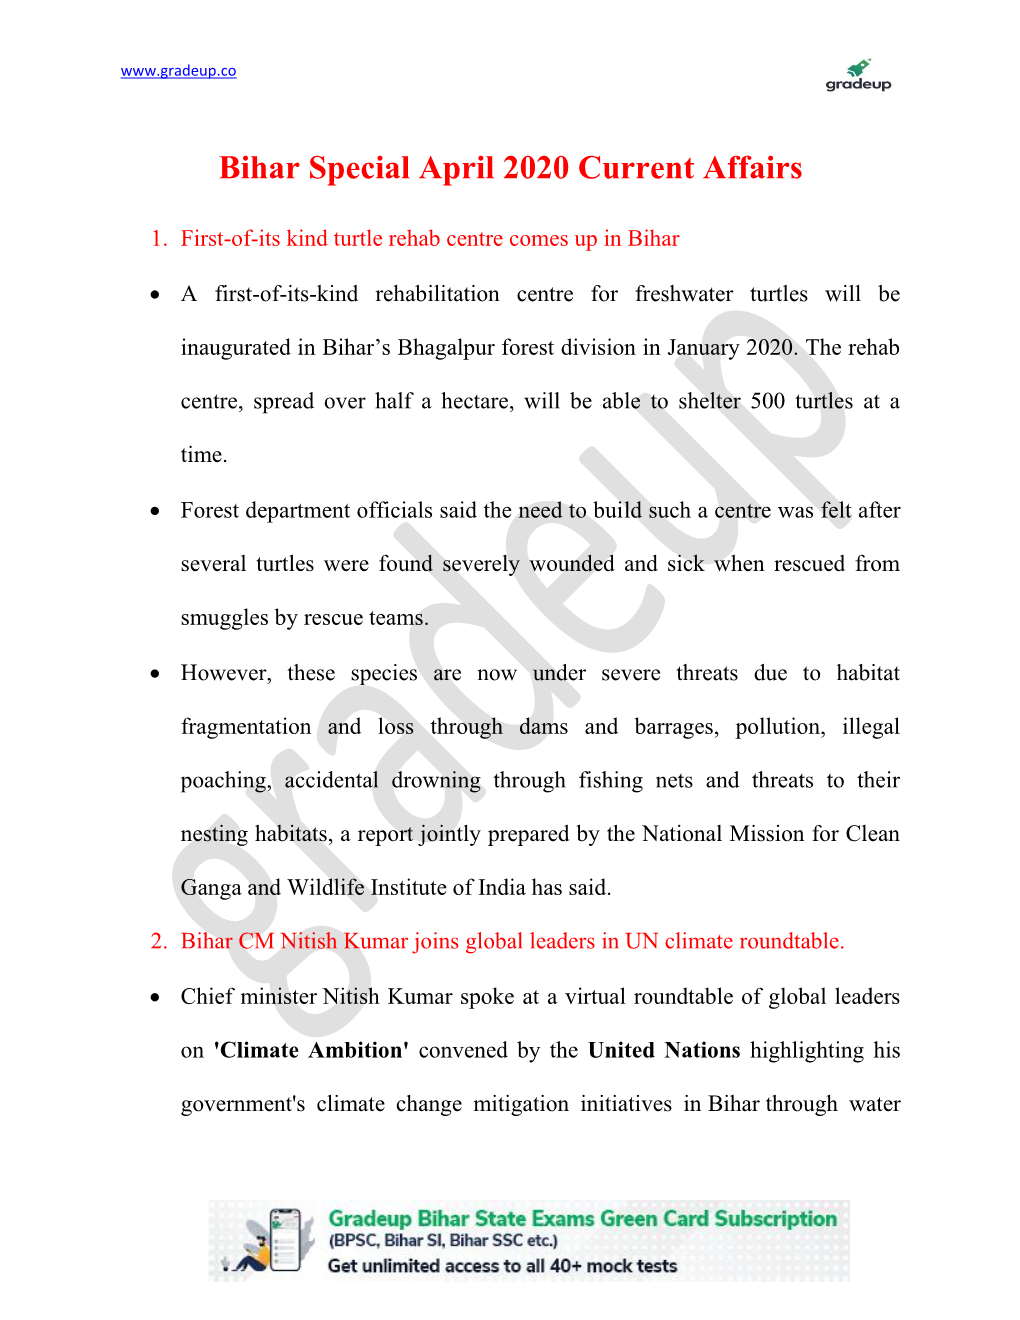 Bihar Specific Current Affair April 2020